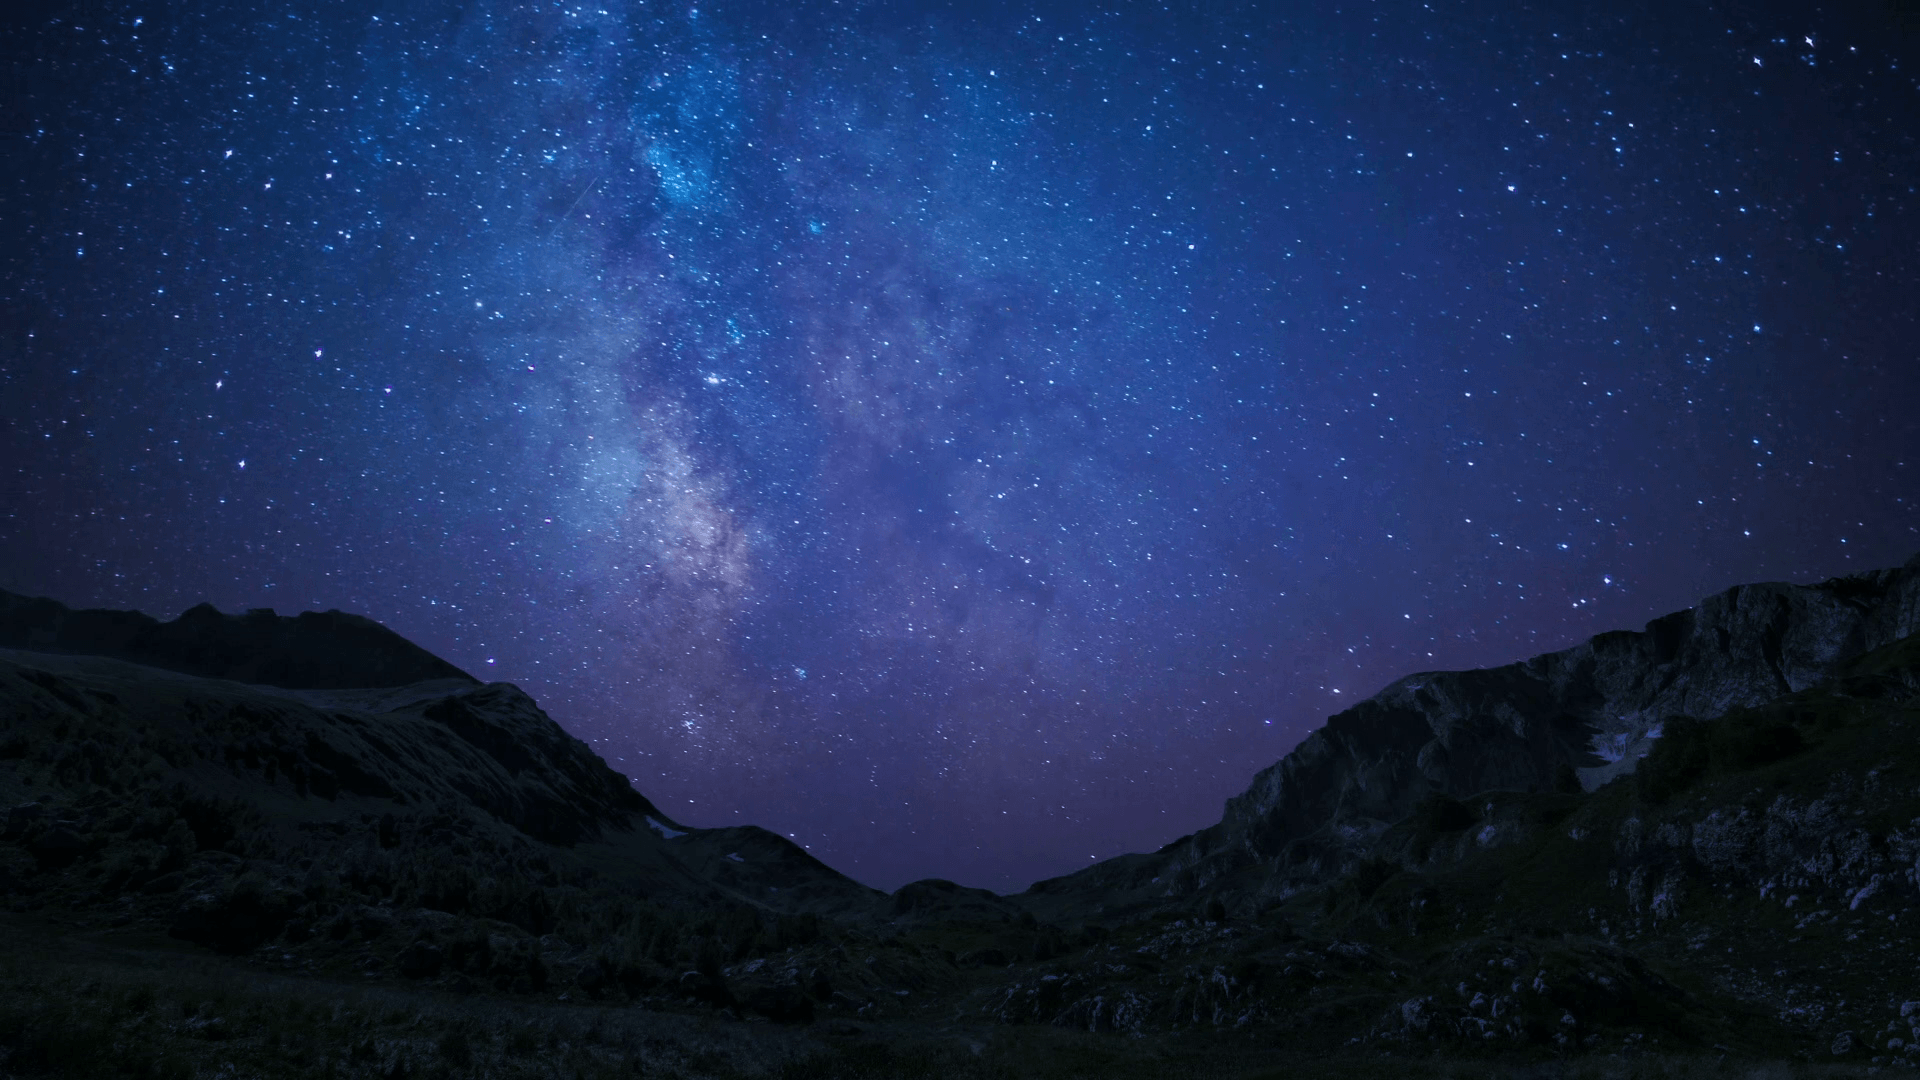 Những bức ảnh về nền bầu trời đêm sẽ là sự lựa chọn hoàn hảo để tạo nên một không gian đẹp mắt trên thiết bị. Hãy thưởng thức những hình ảnh đầy mê hoặc về bầu trời đêm có thể dùng làm hình nền cho thiết bị của bạn.